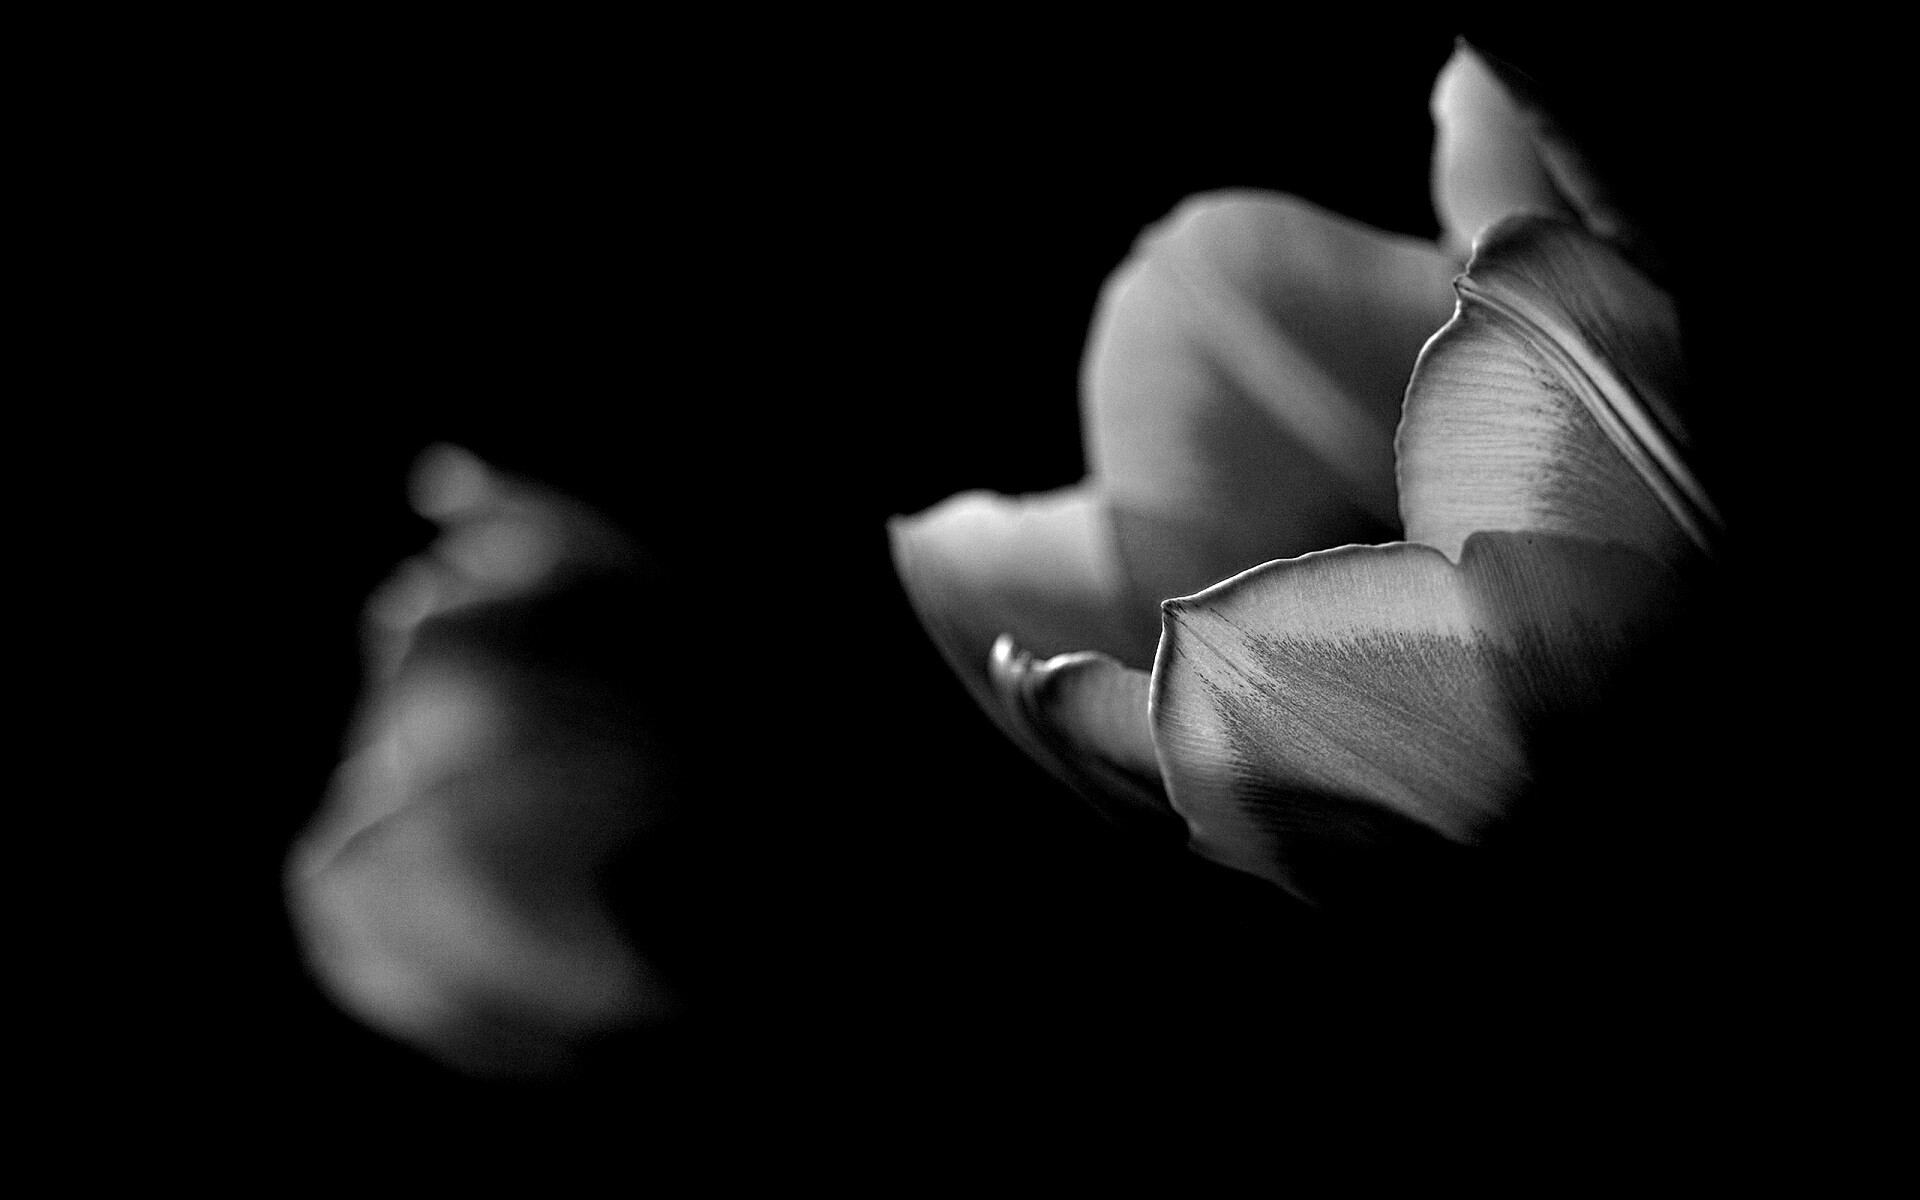 Тюльпаны в темноте обои